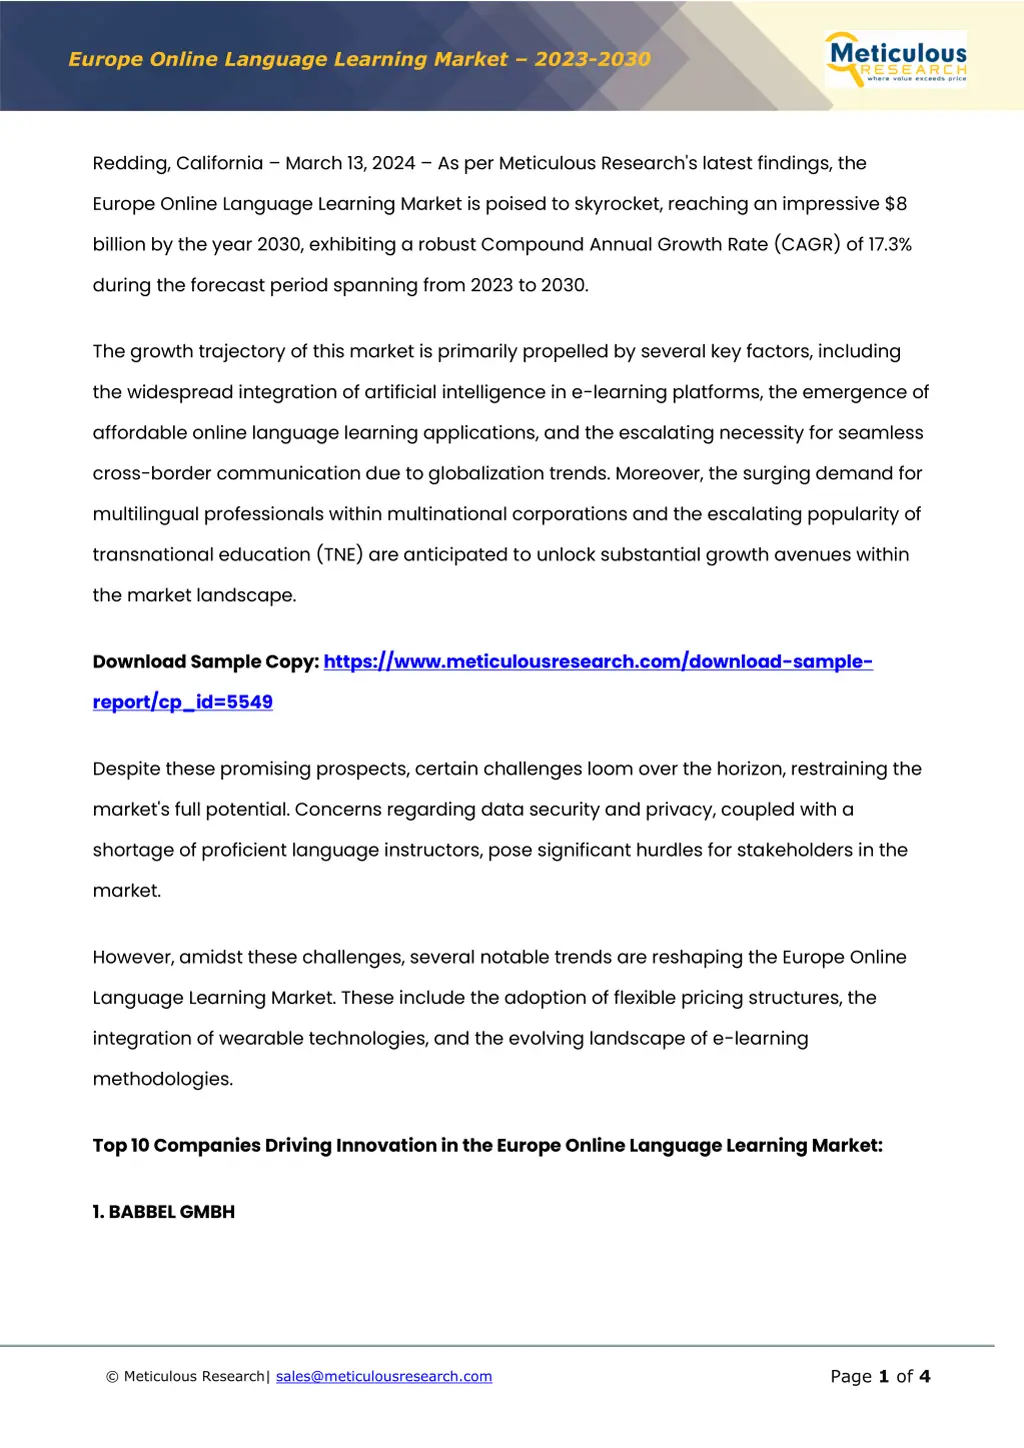 europe online language learning market 2023 2030